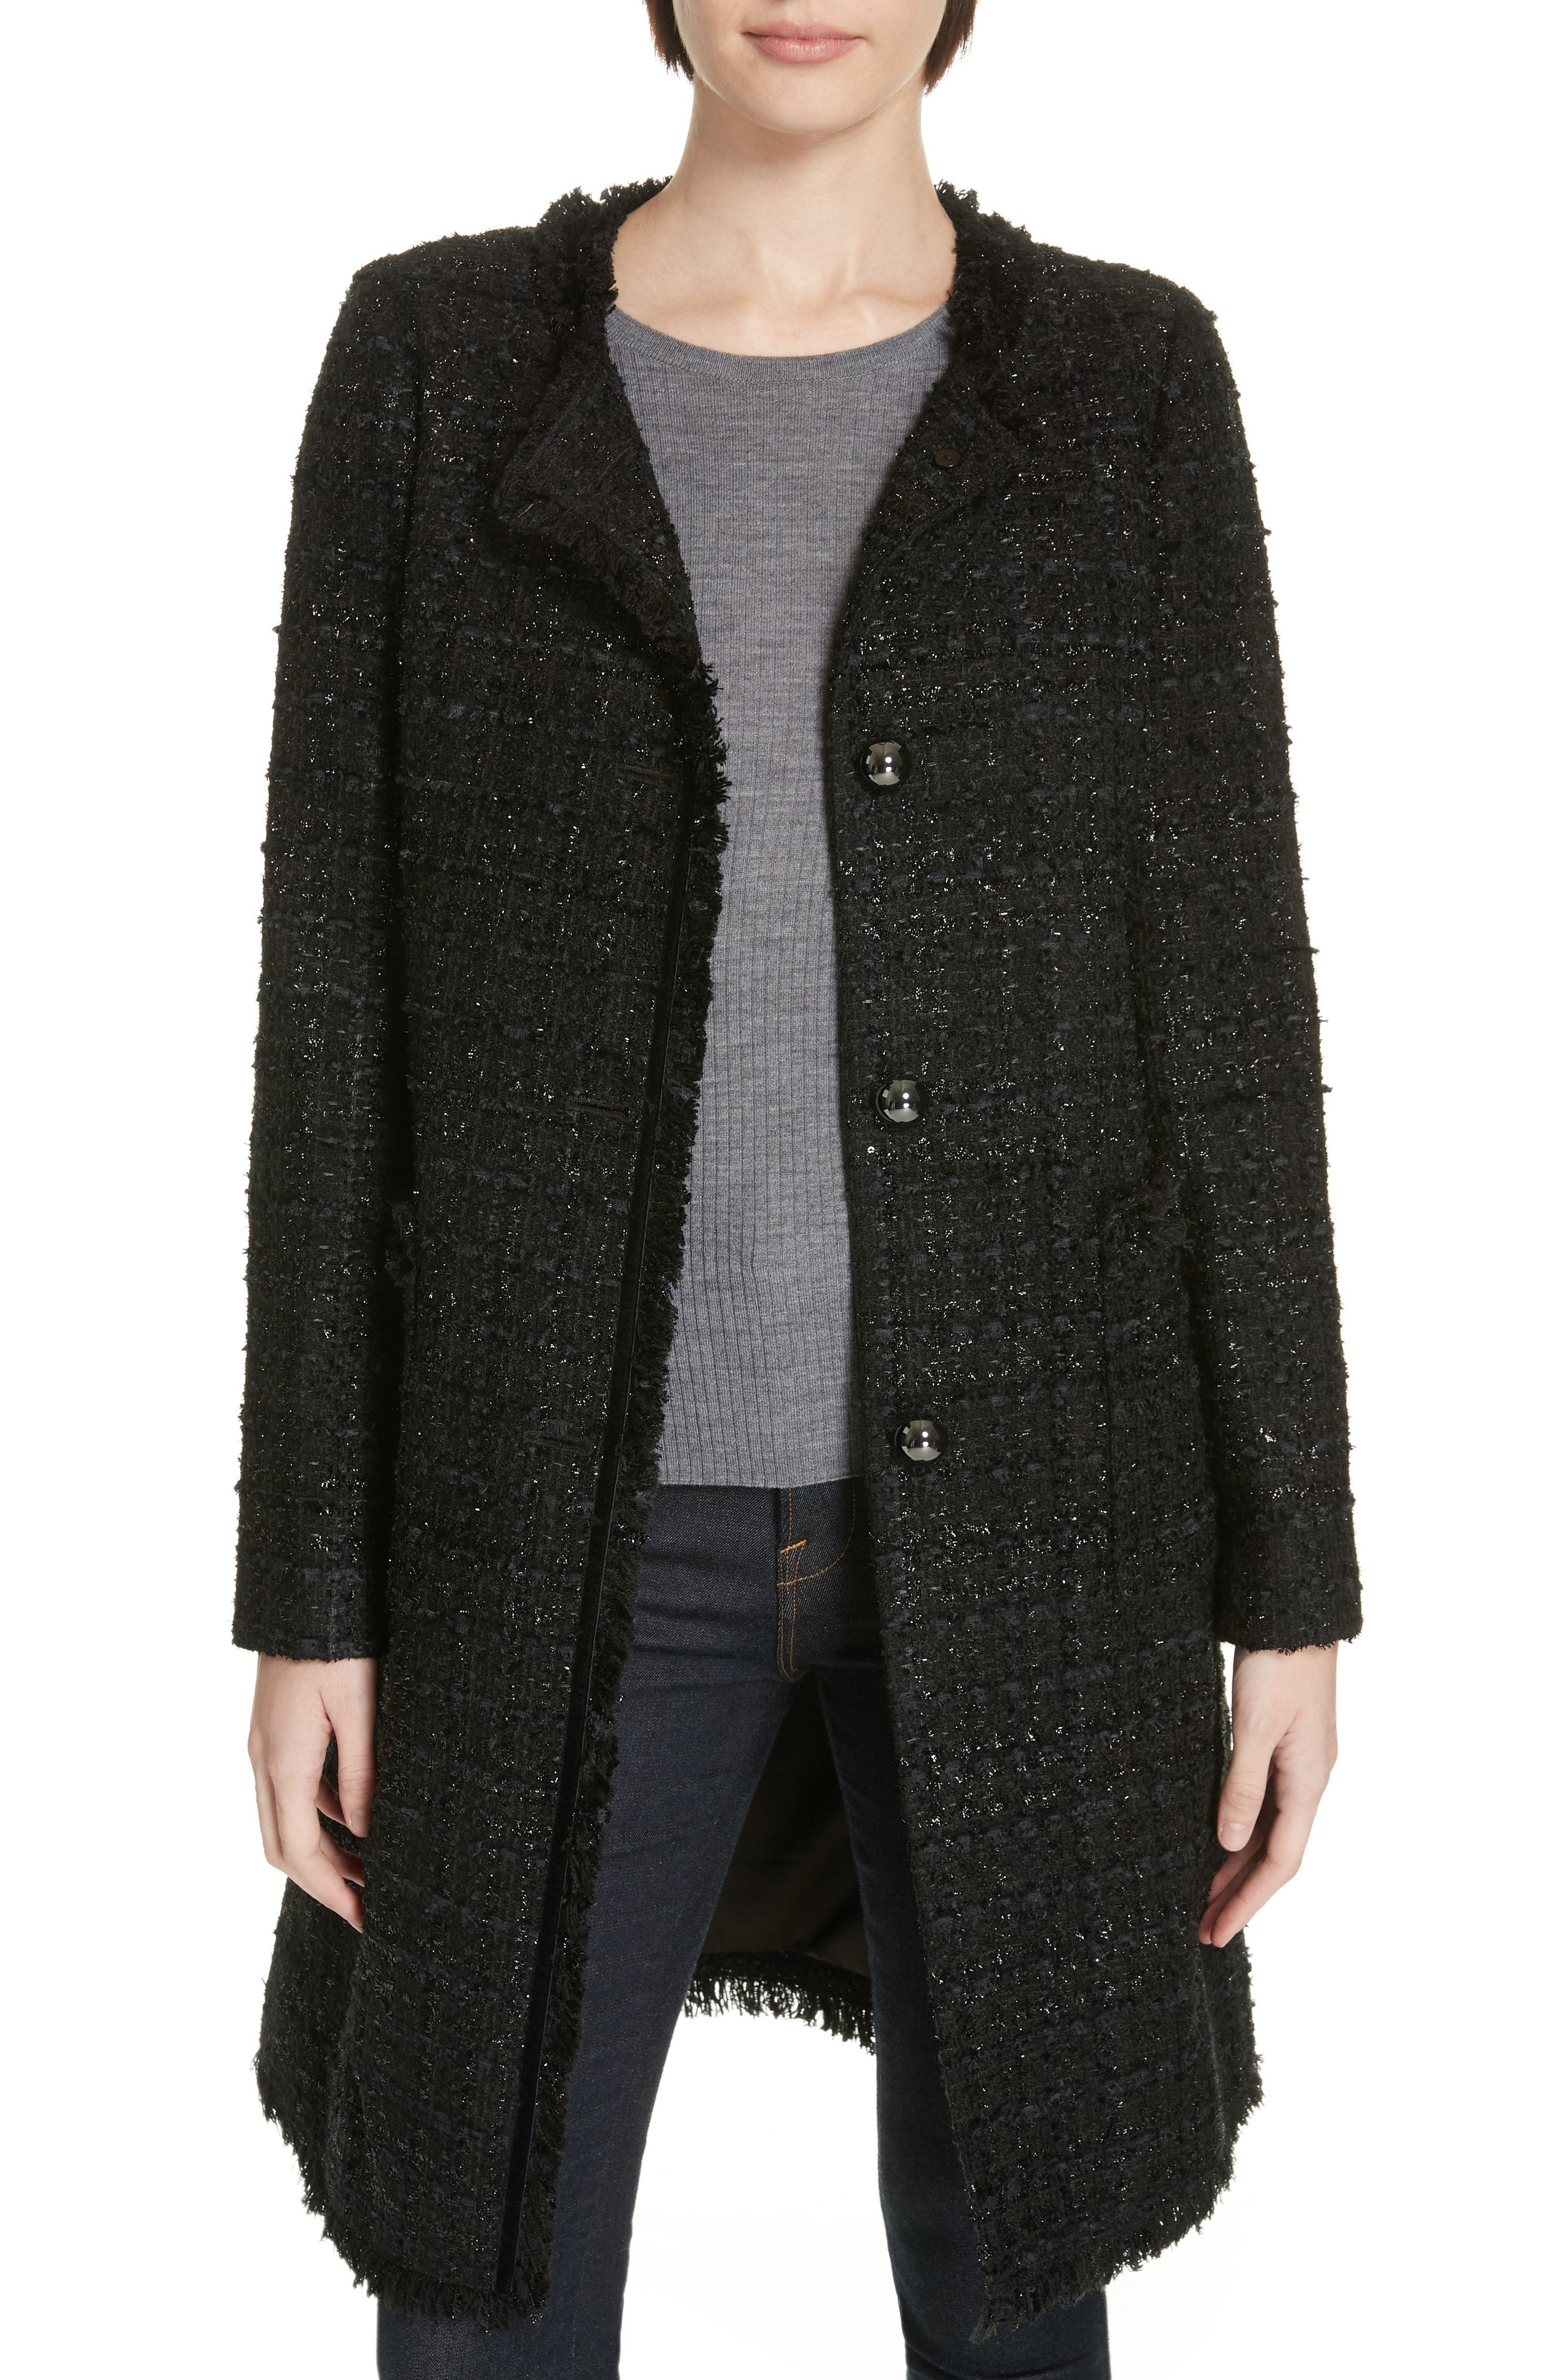 kate spade new york Sparkle Tweed Coat, $598 | Nordstrom | Lookastic